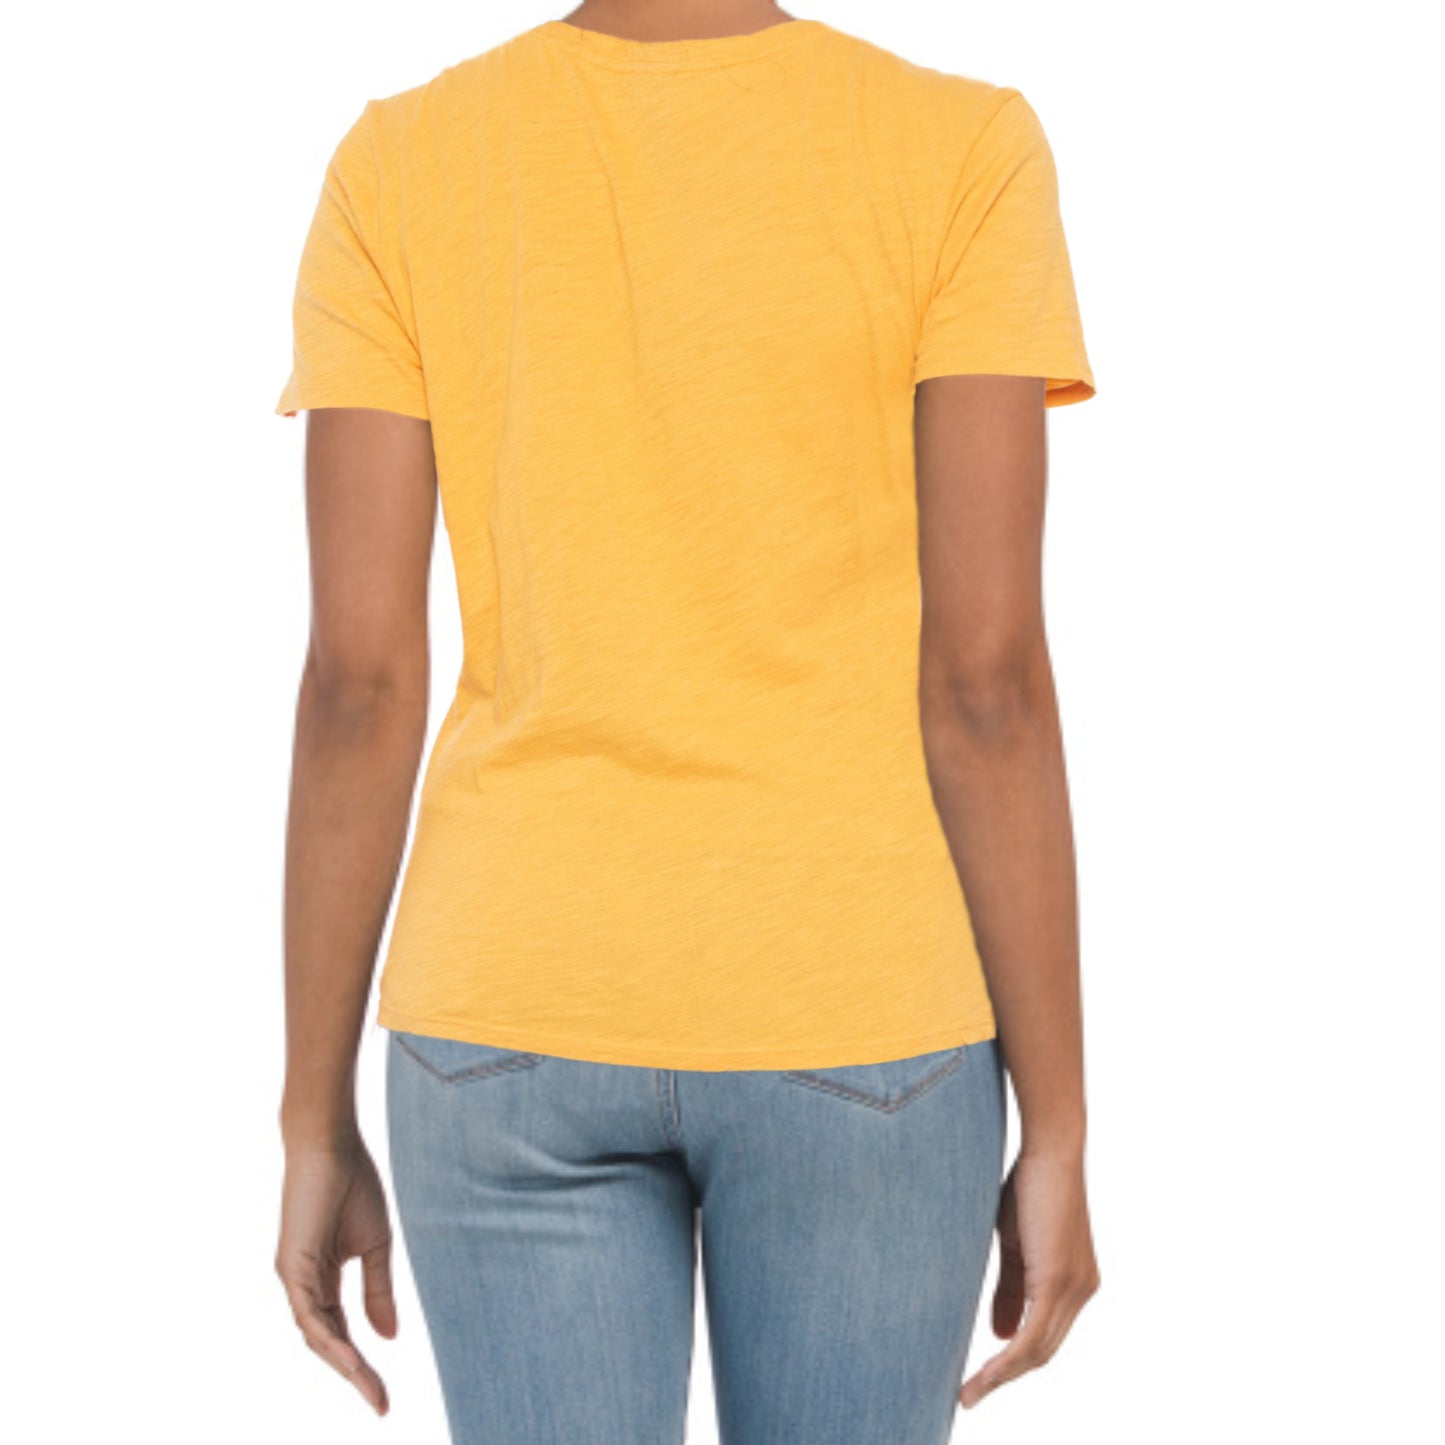 Lucky Brand Women's Cascading Lucky Graphic Print Soft Cotton T-Shirt Top